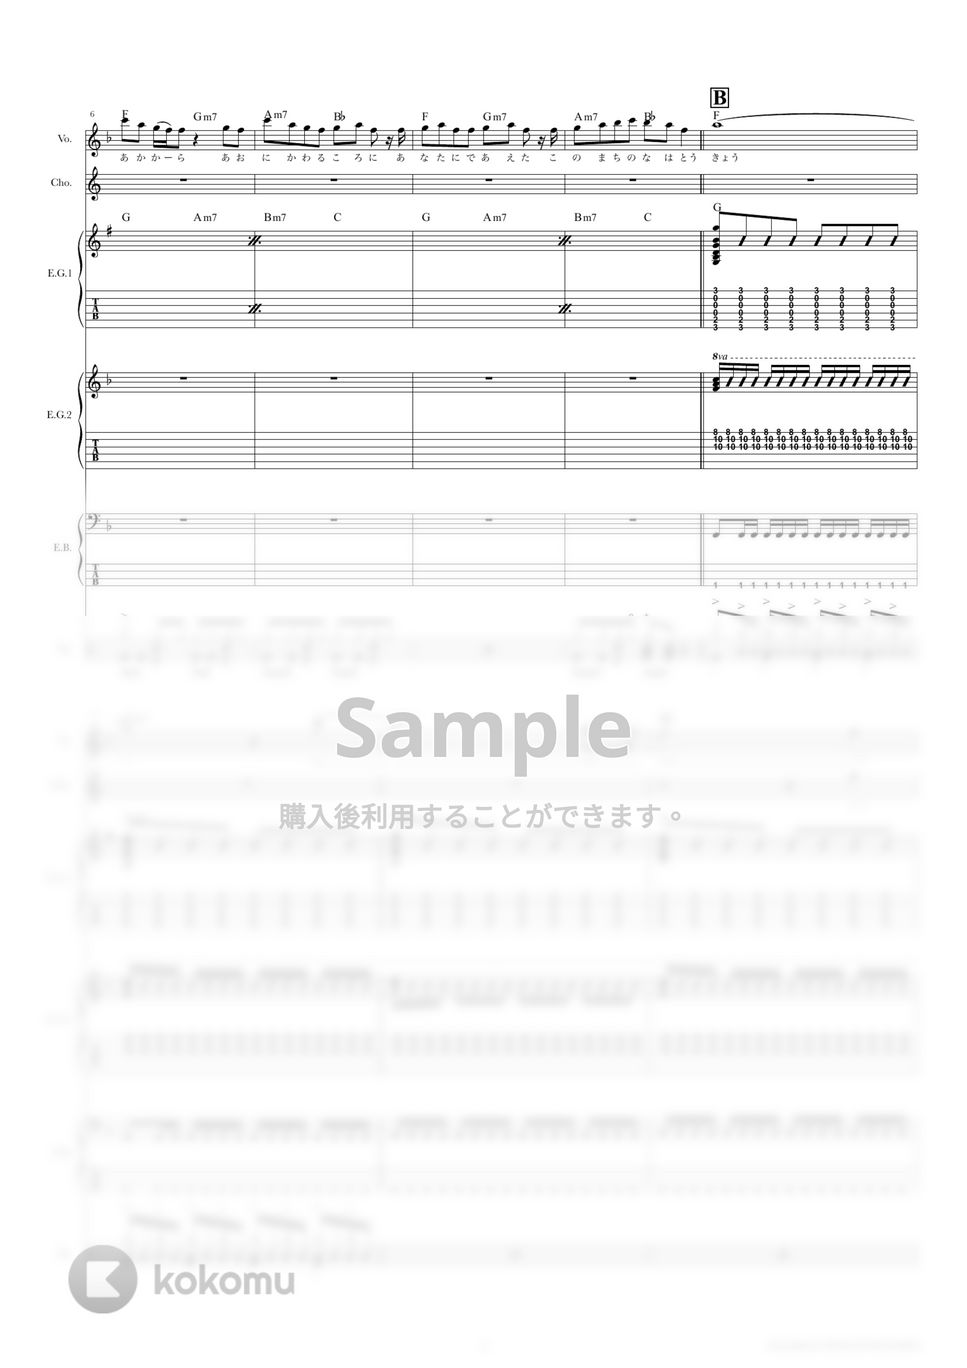 きのこ帝国 - 東京 (バンドスコア) by TRIAD GUITAR SCHOOL